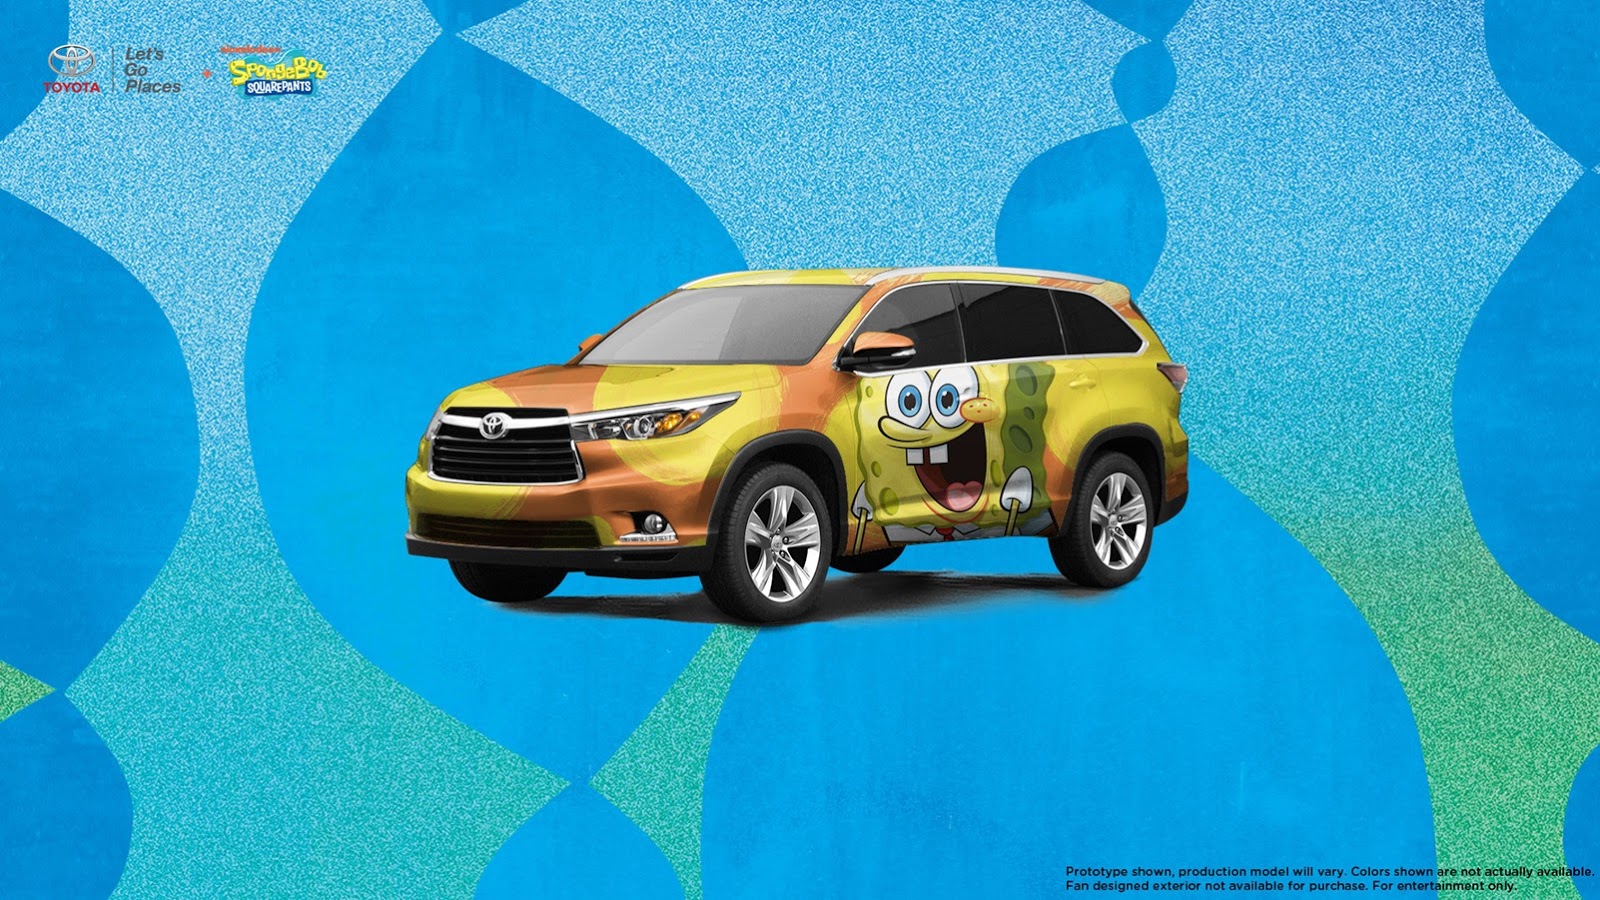 International, Toyota Highlander Wallpaper: Download Yuk : Wallpaper Toyota Highlander Spongebob SquarePants